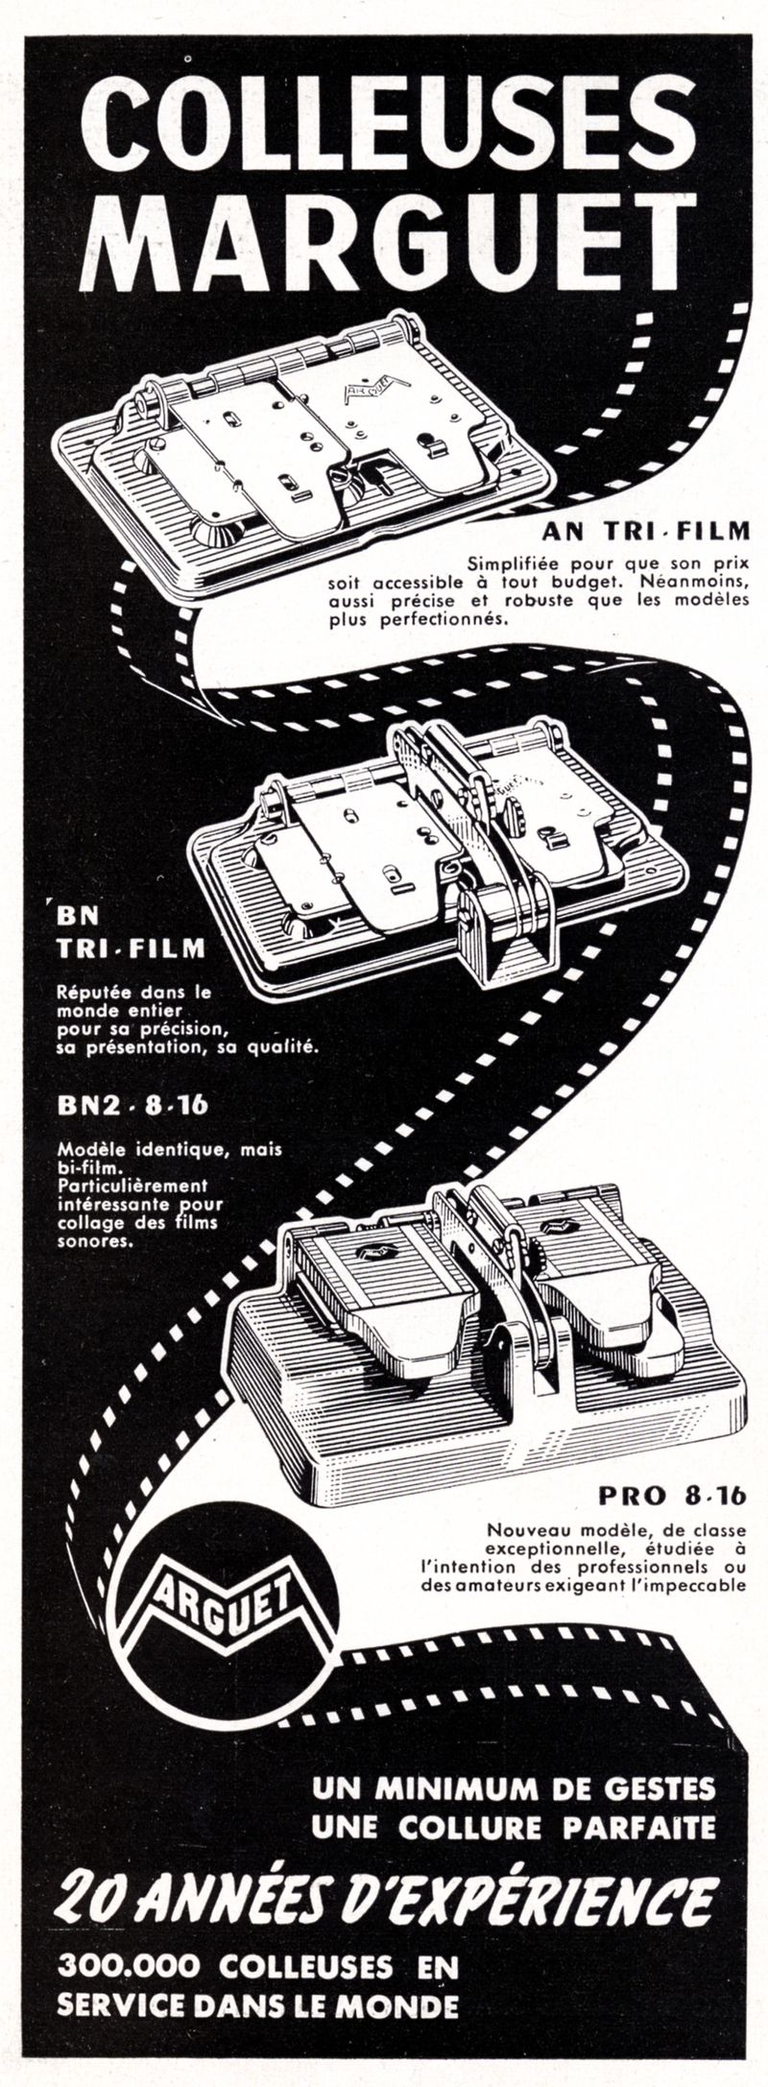 Marguet - colleuse AN tri-film, BN tri-film, BN 2 8-16, Pro 8-16 - 1958